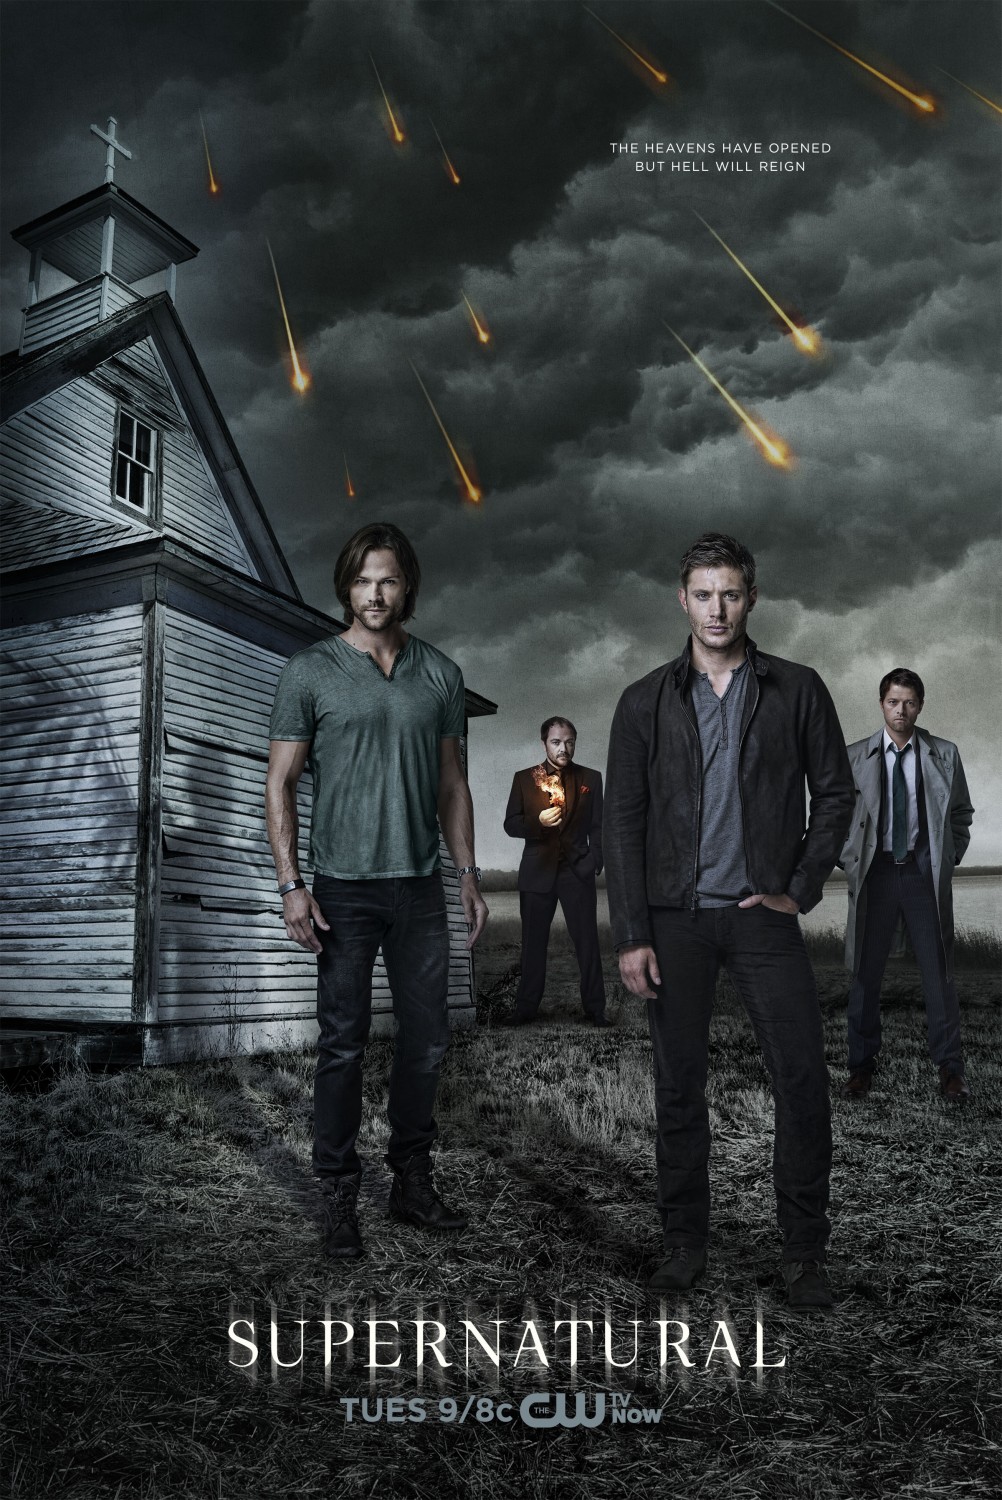 Supernatural Hibbing 911 (TV Episode 2014) - IMDb